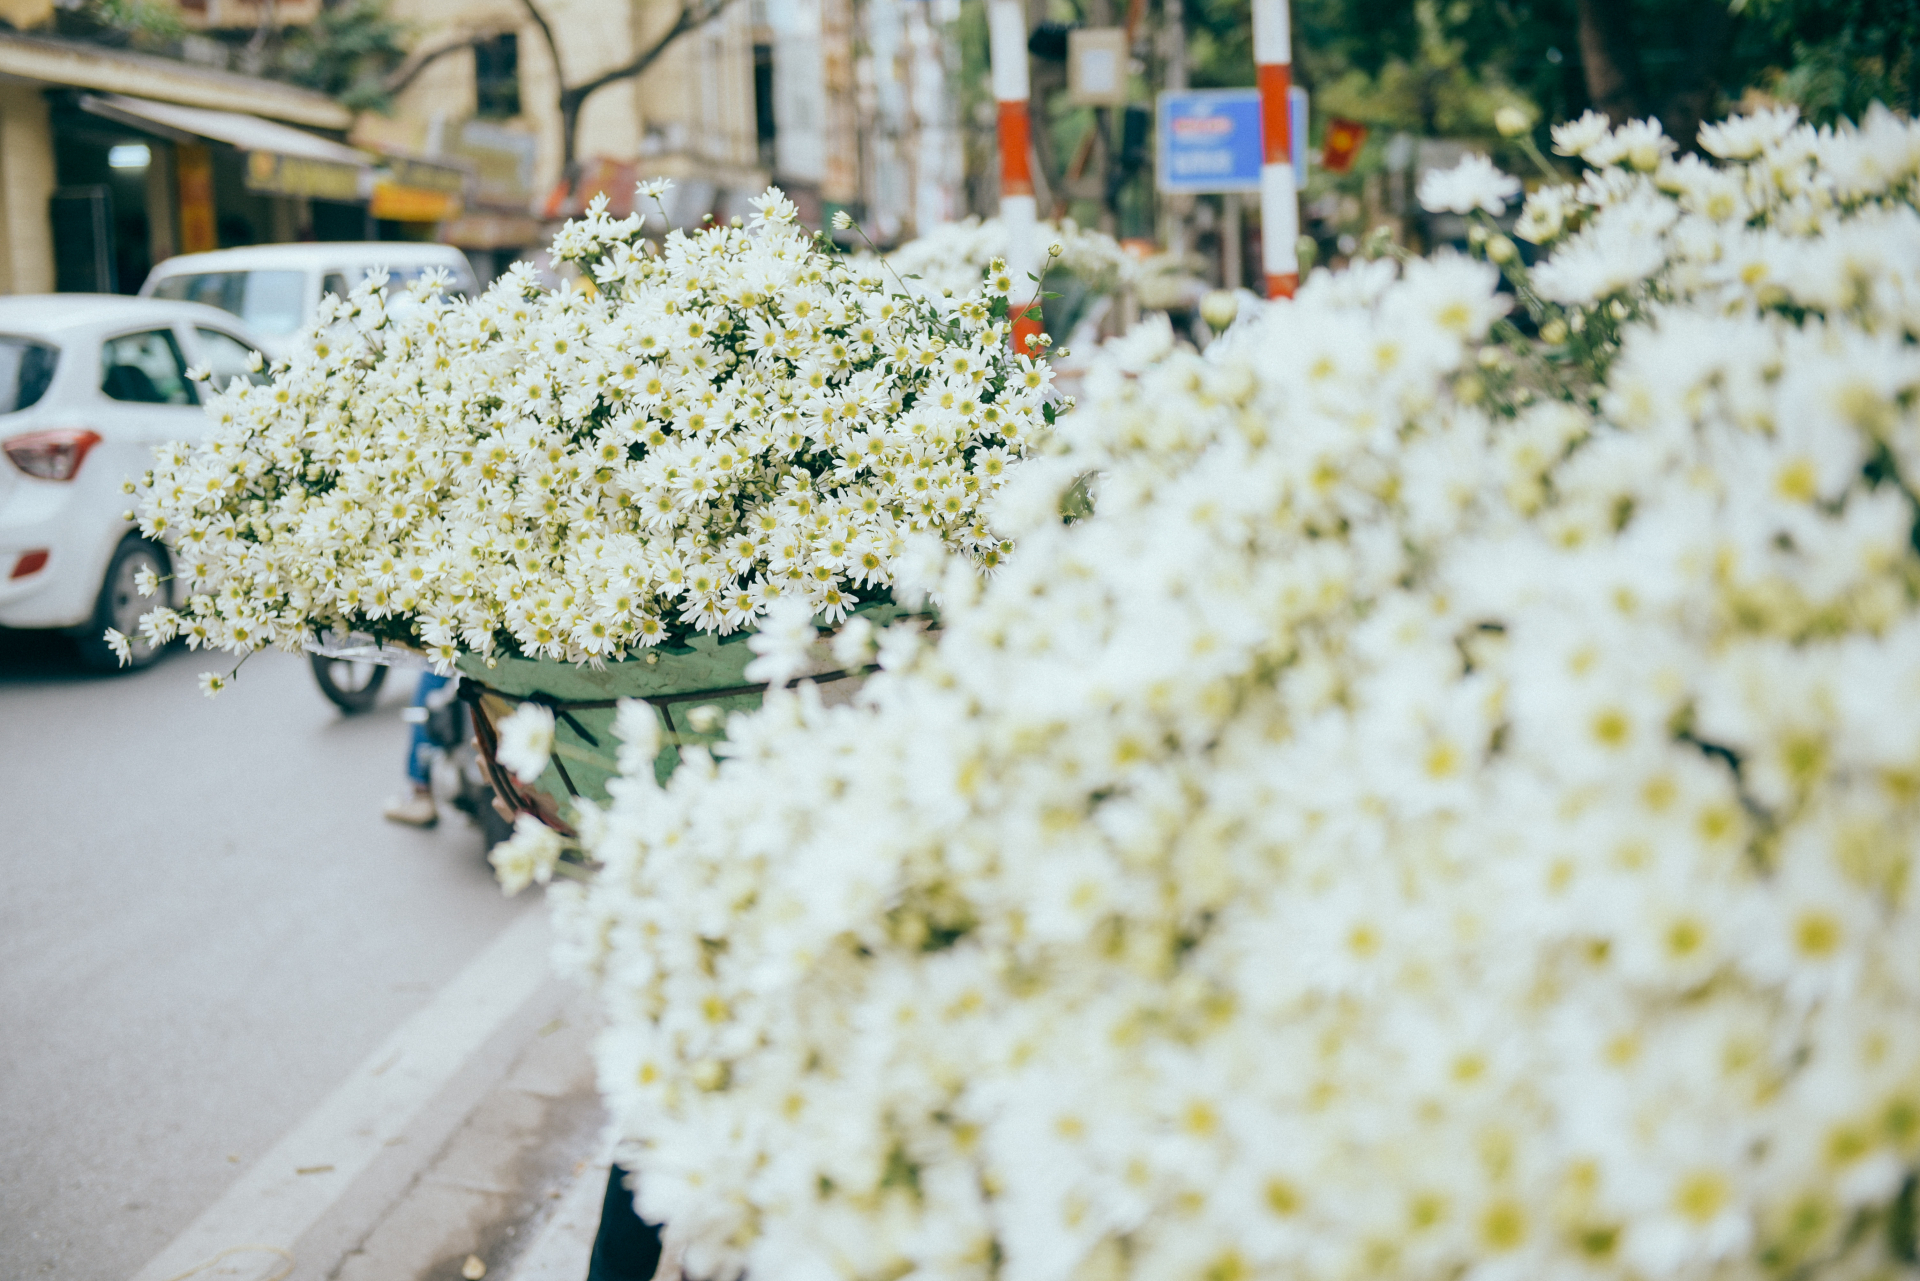 Màu trắng ngần của cúc hoạ mi ngập tràn đường phố Hà Nội, đặc biệt là các đoạn như Mai Xuân Thưởng - Thuỵ Khuê, Yên Phụ,..